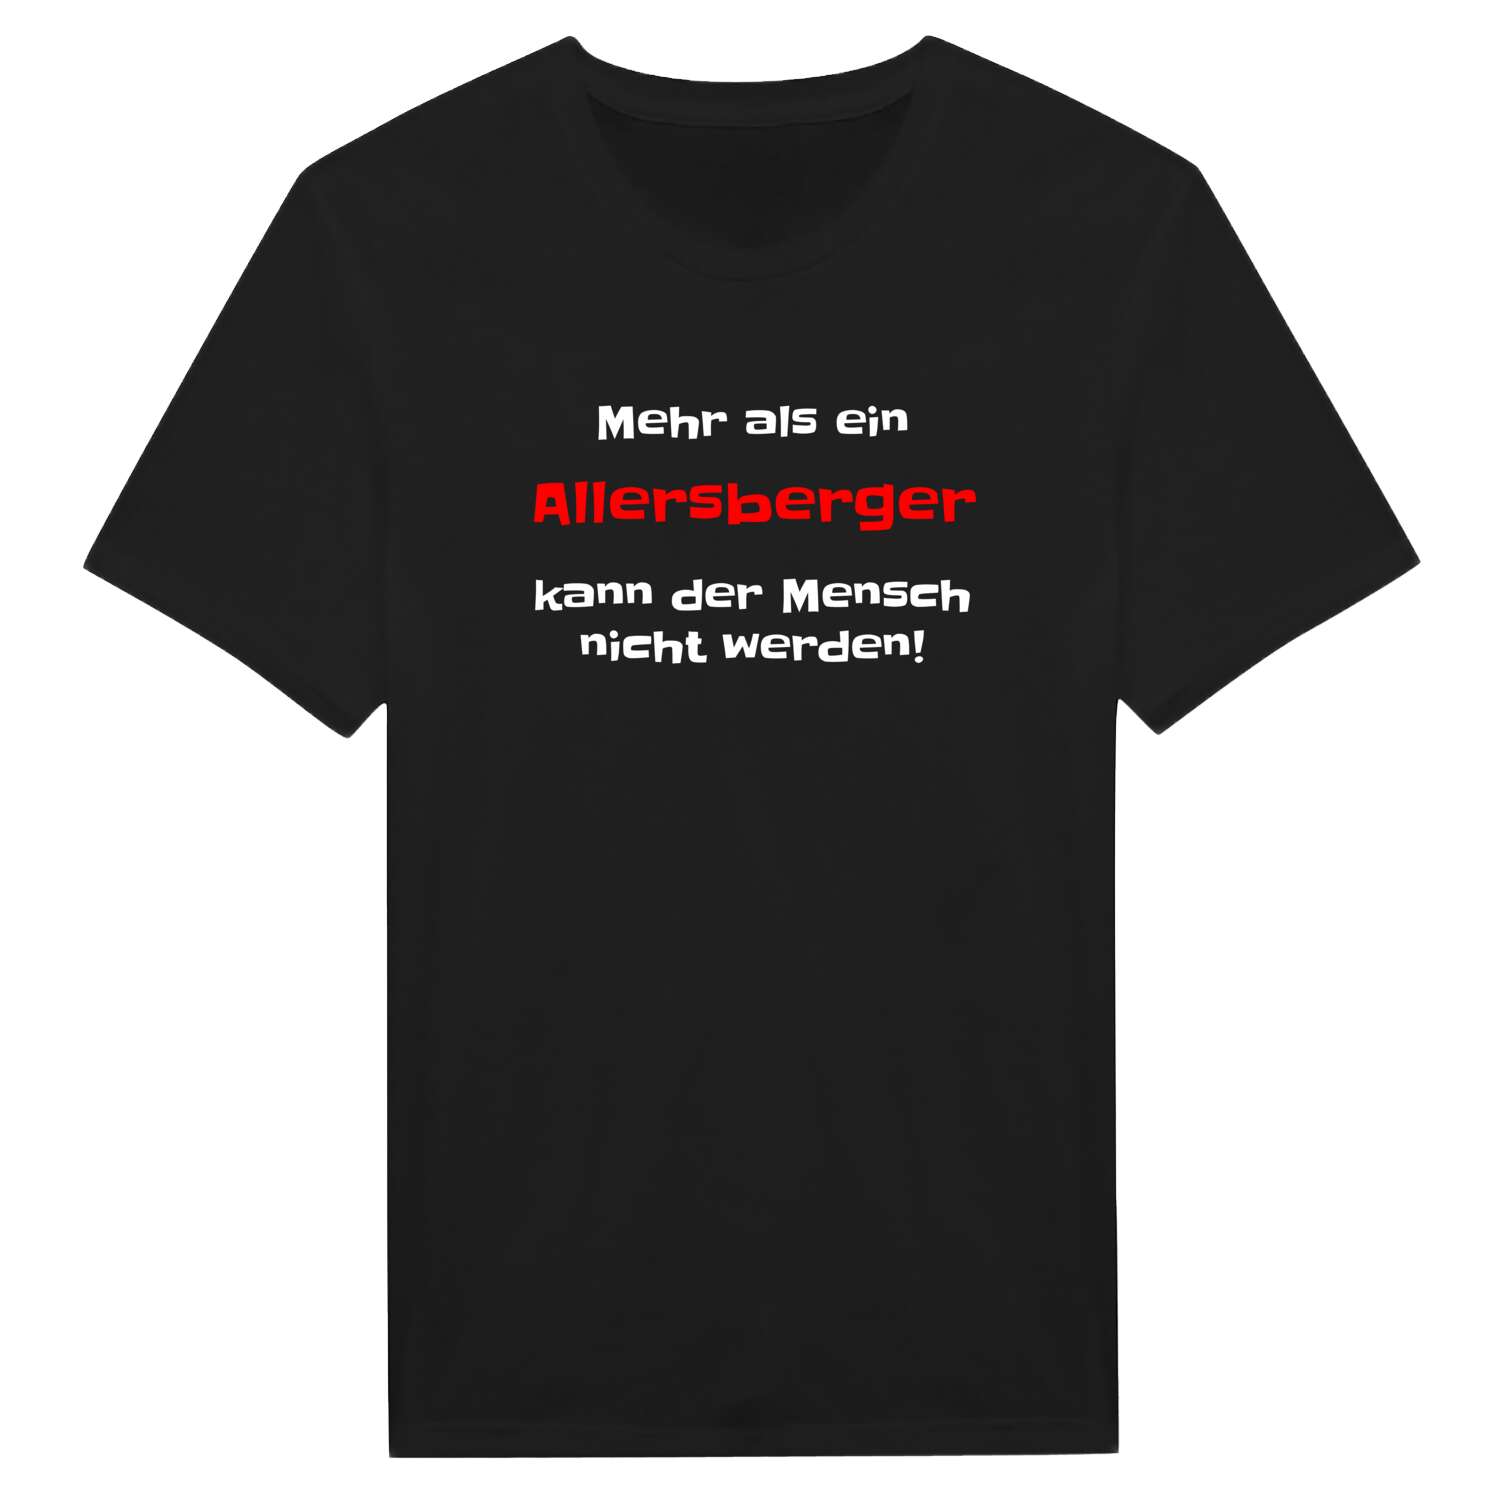 Allersberg T-Shirt »Mehr als ein«